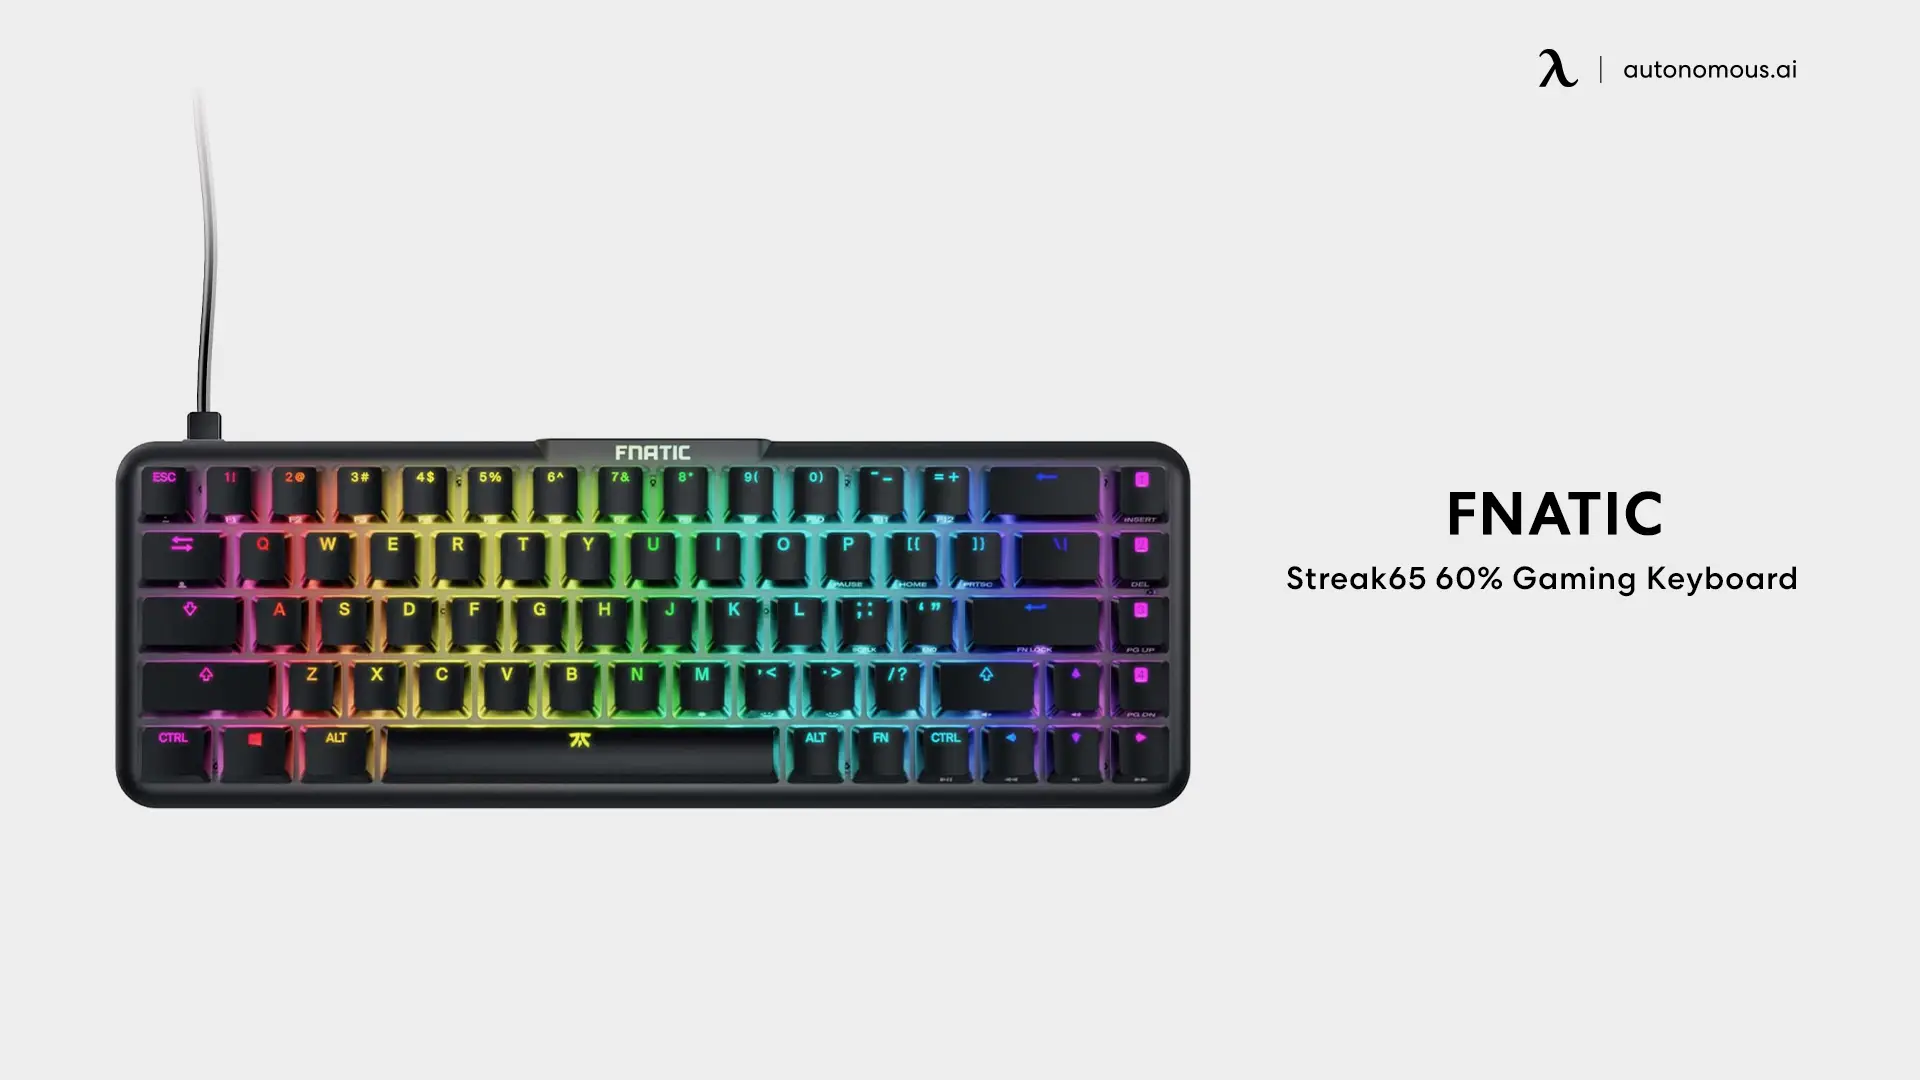 Fnatic Streak65 60% Gaming Keyboard